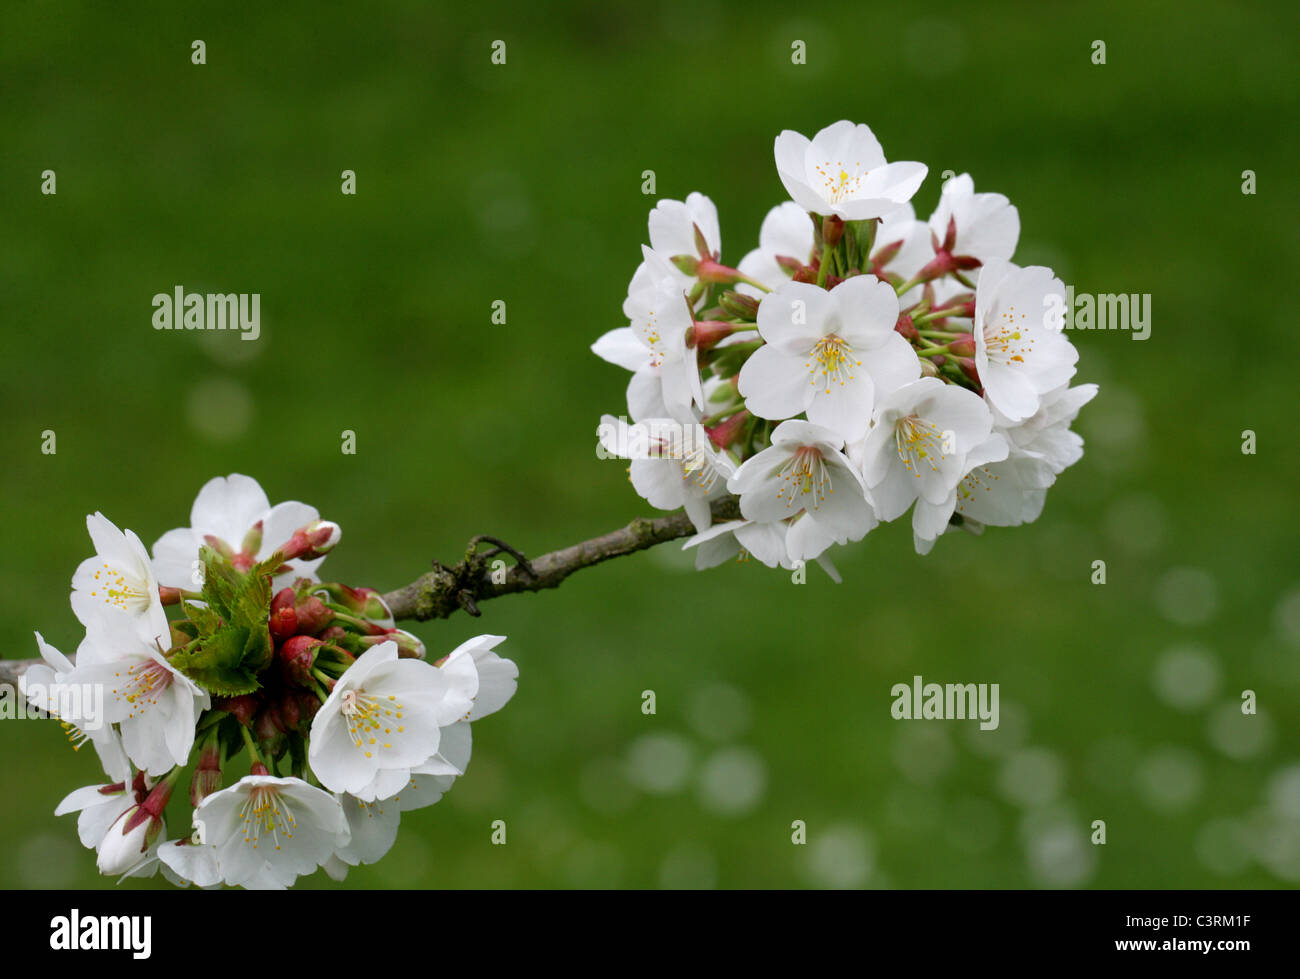 Prunus 'Umineko', Rosaceae. Flowering Cherry Cross Between Prunus incisa and Prunus speciosa. Stock Photo